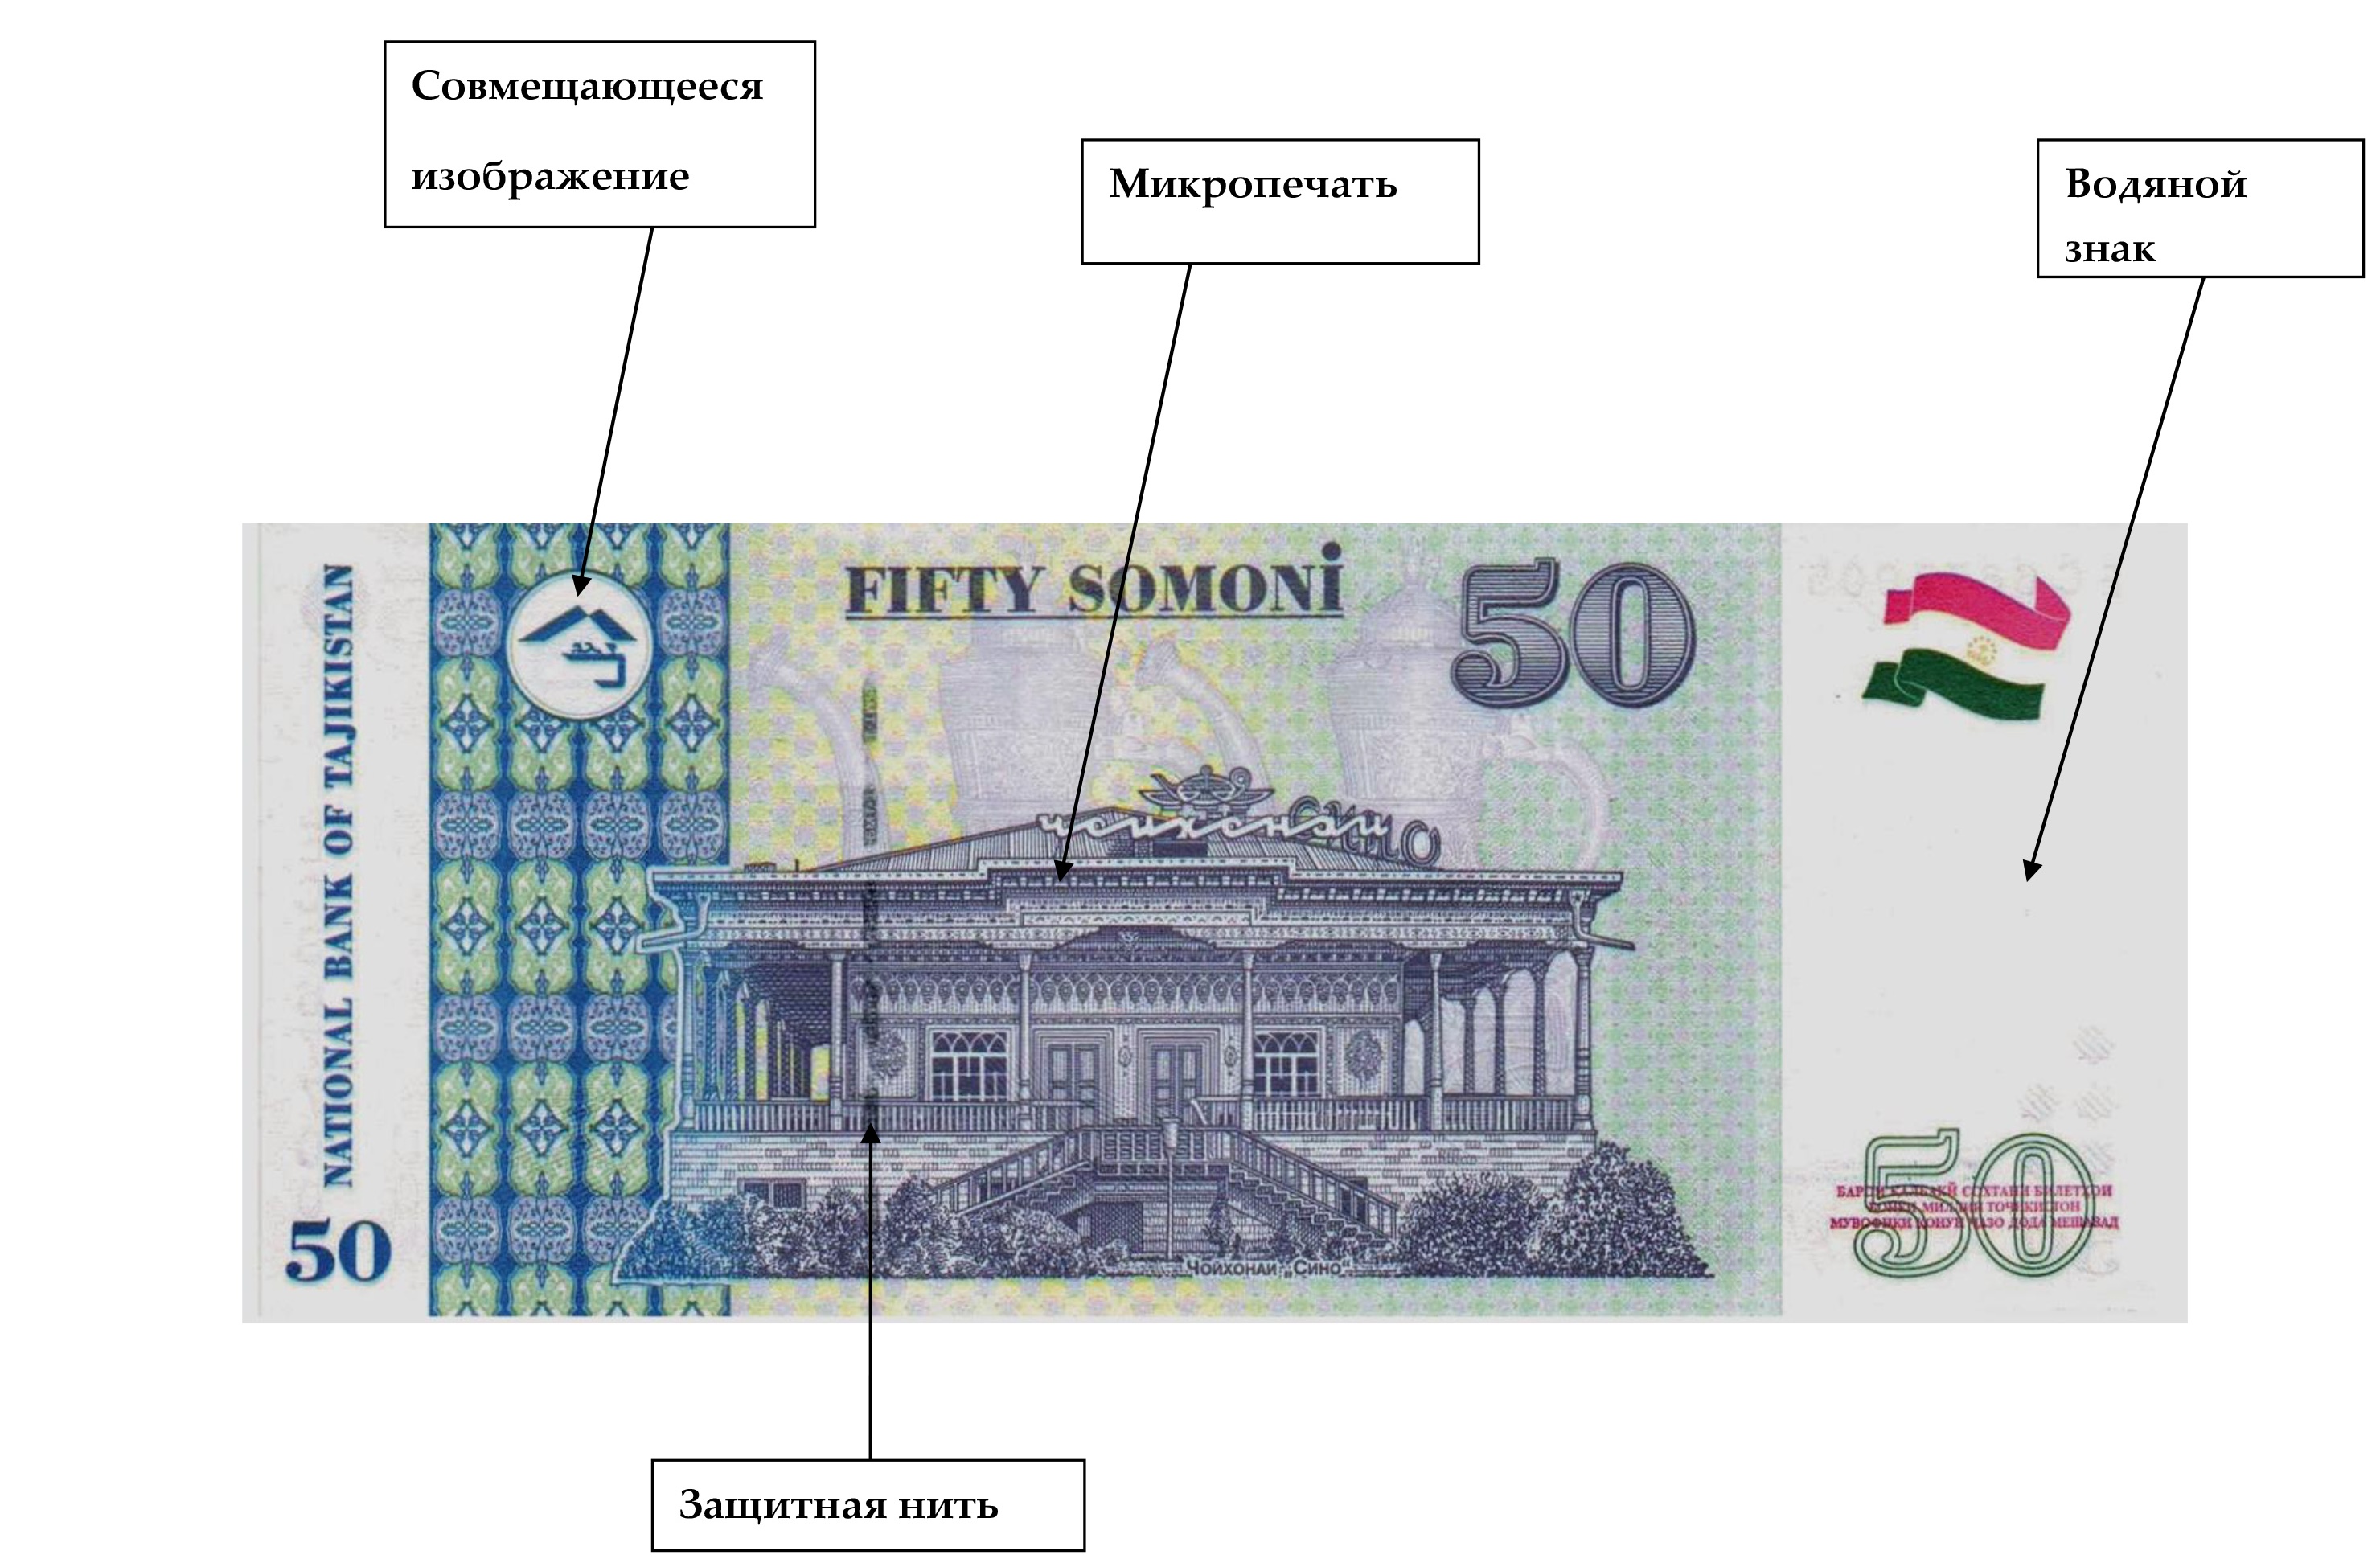 Сегодня курс рубля на сомони амонатбонк 1000. Символ валюты Таджикистана. Сомони символ валюты. Совмещающиеся изображения на банкнотах. Денежный знак Сомони.